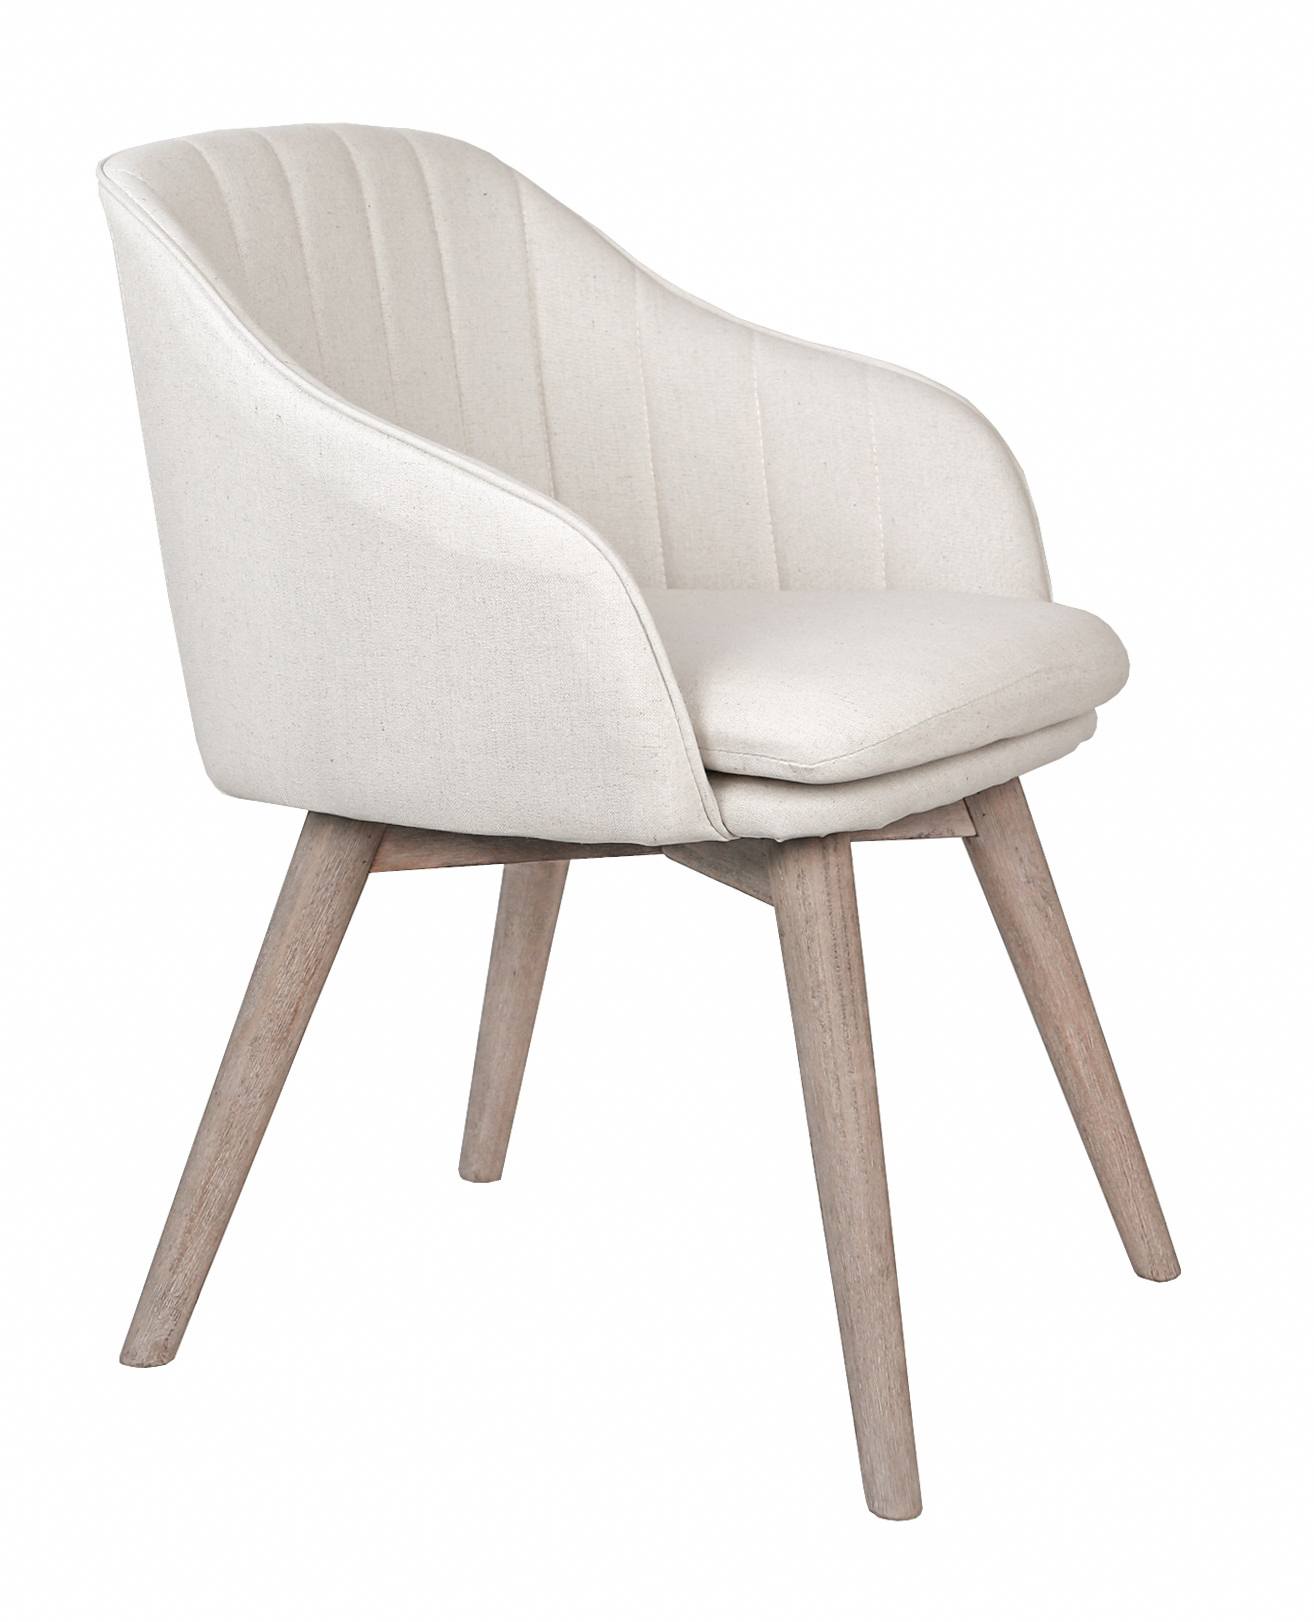 5KS29651-01 Интерьерные стулья Aqua wood beige MAK